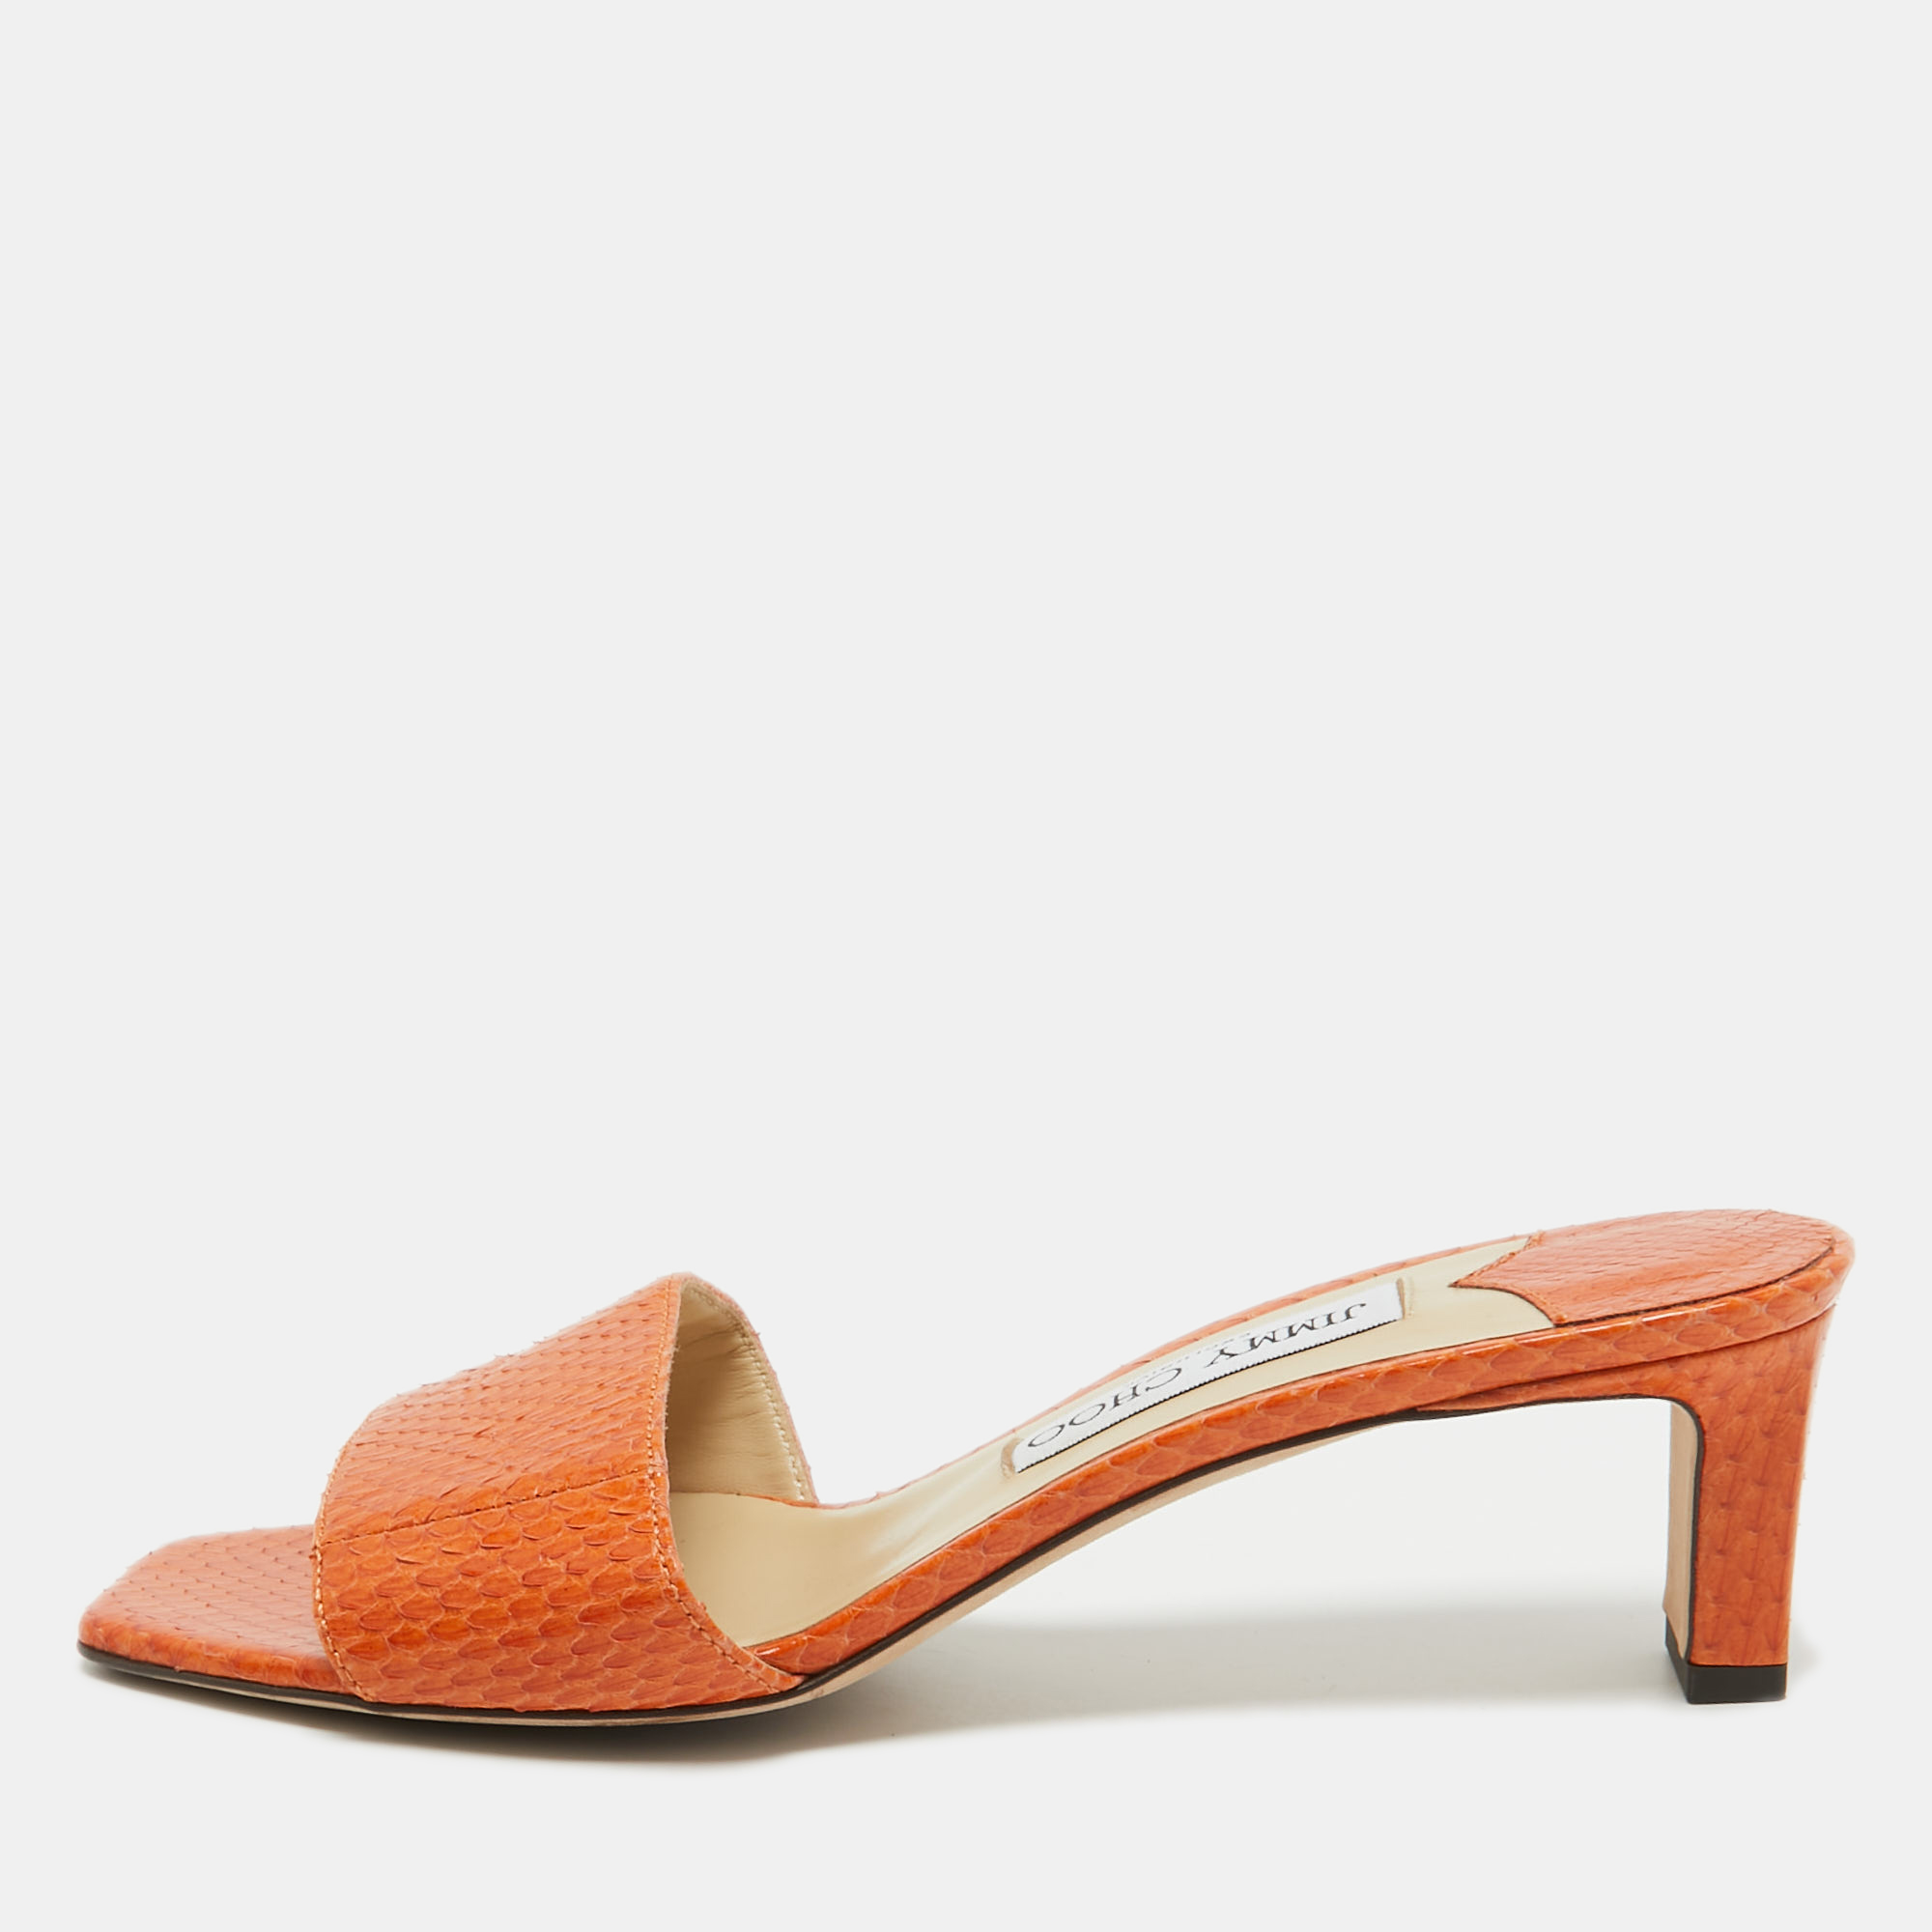 Pre-owned Jimmy Choo Orange Python K-slide Sandals Size 37